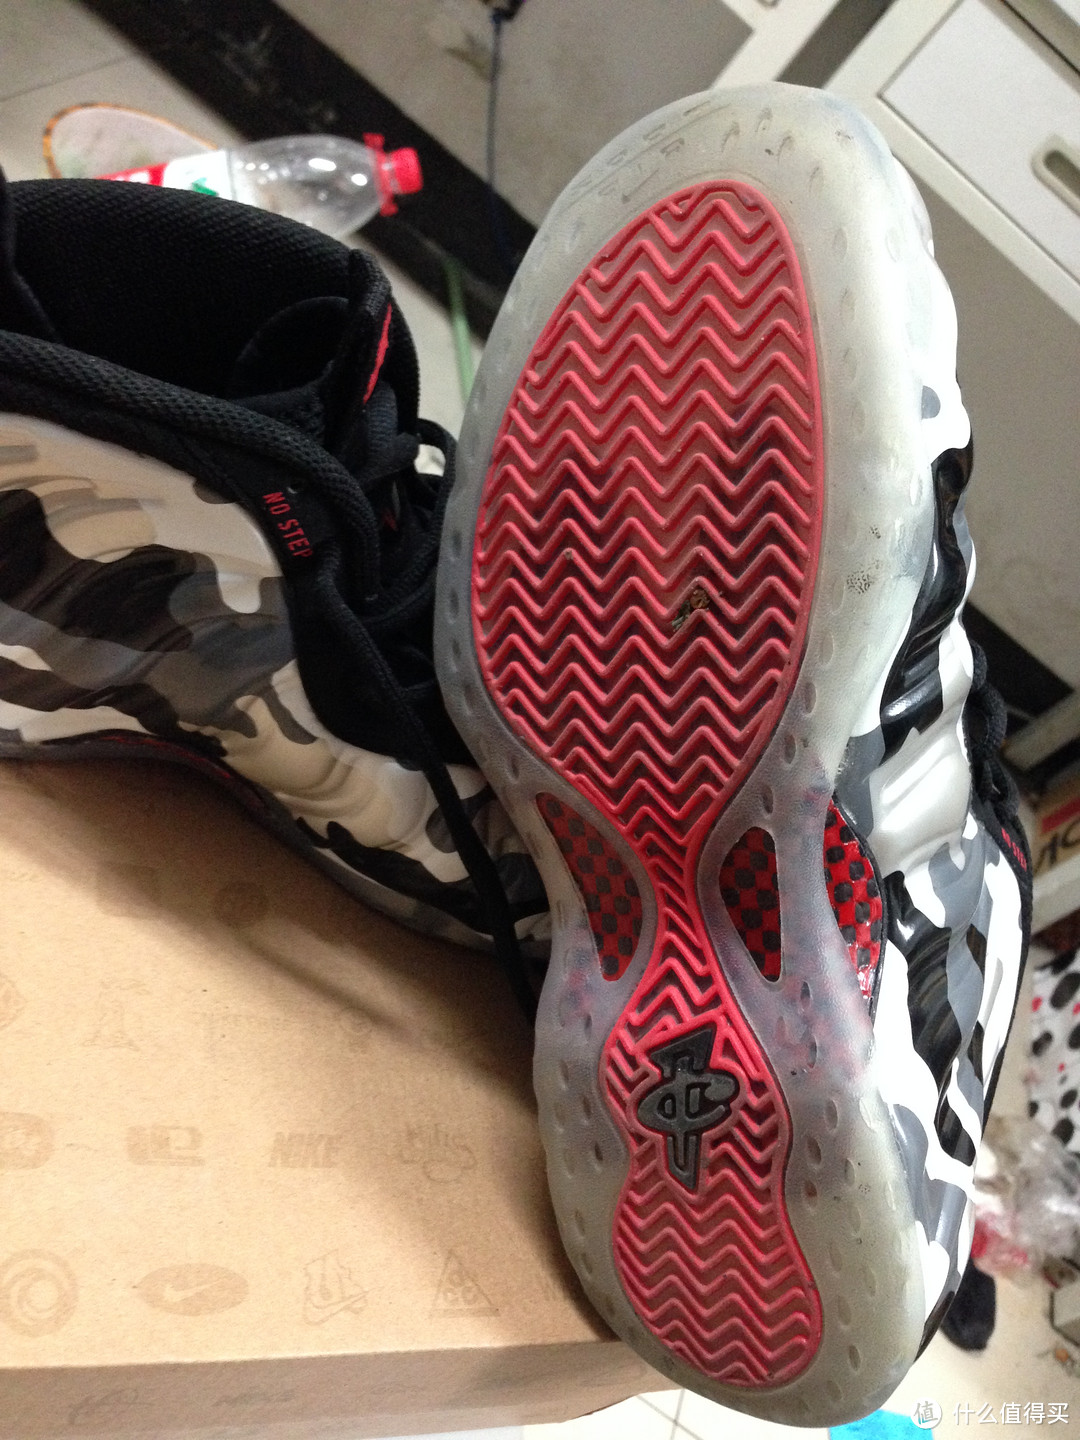 每个篮球爱好者心中都有一双最爱的鞋：Nike 耐克 Air Foamposite One 迷彩喷